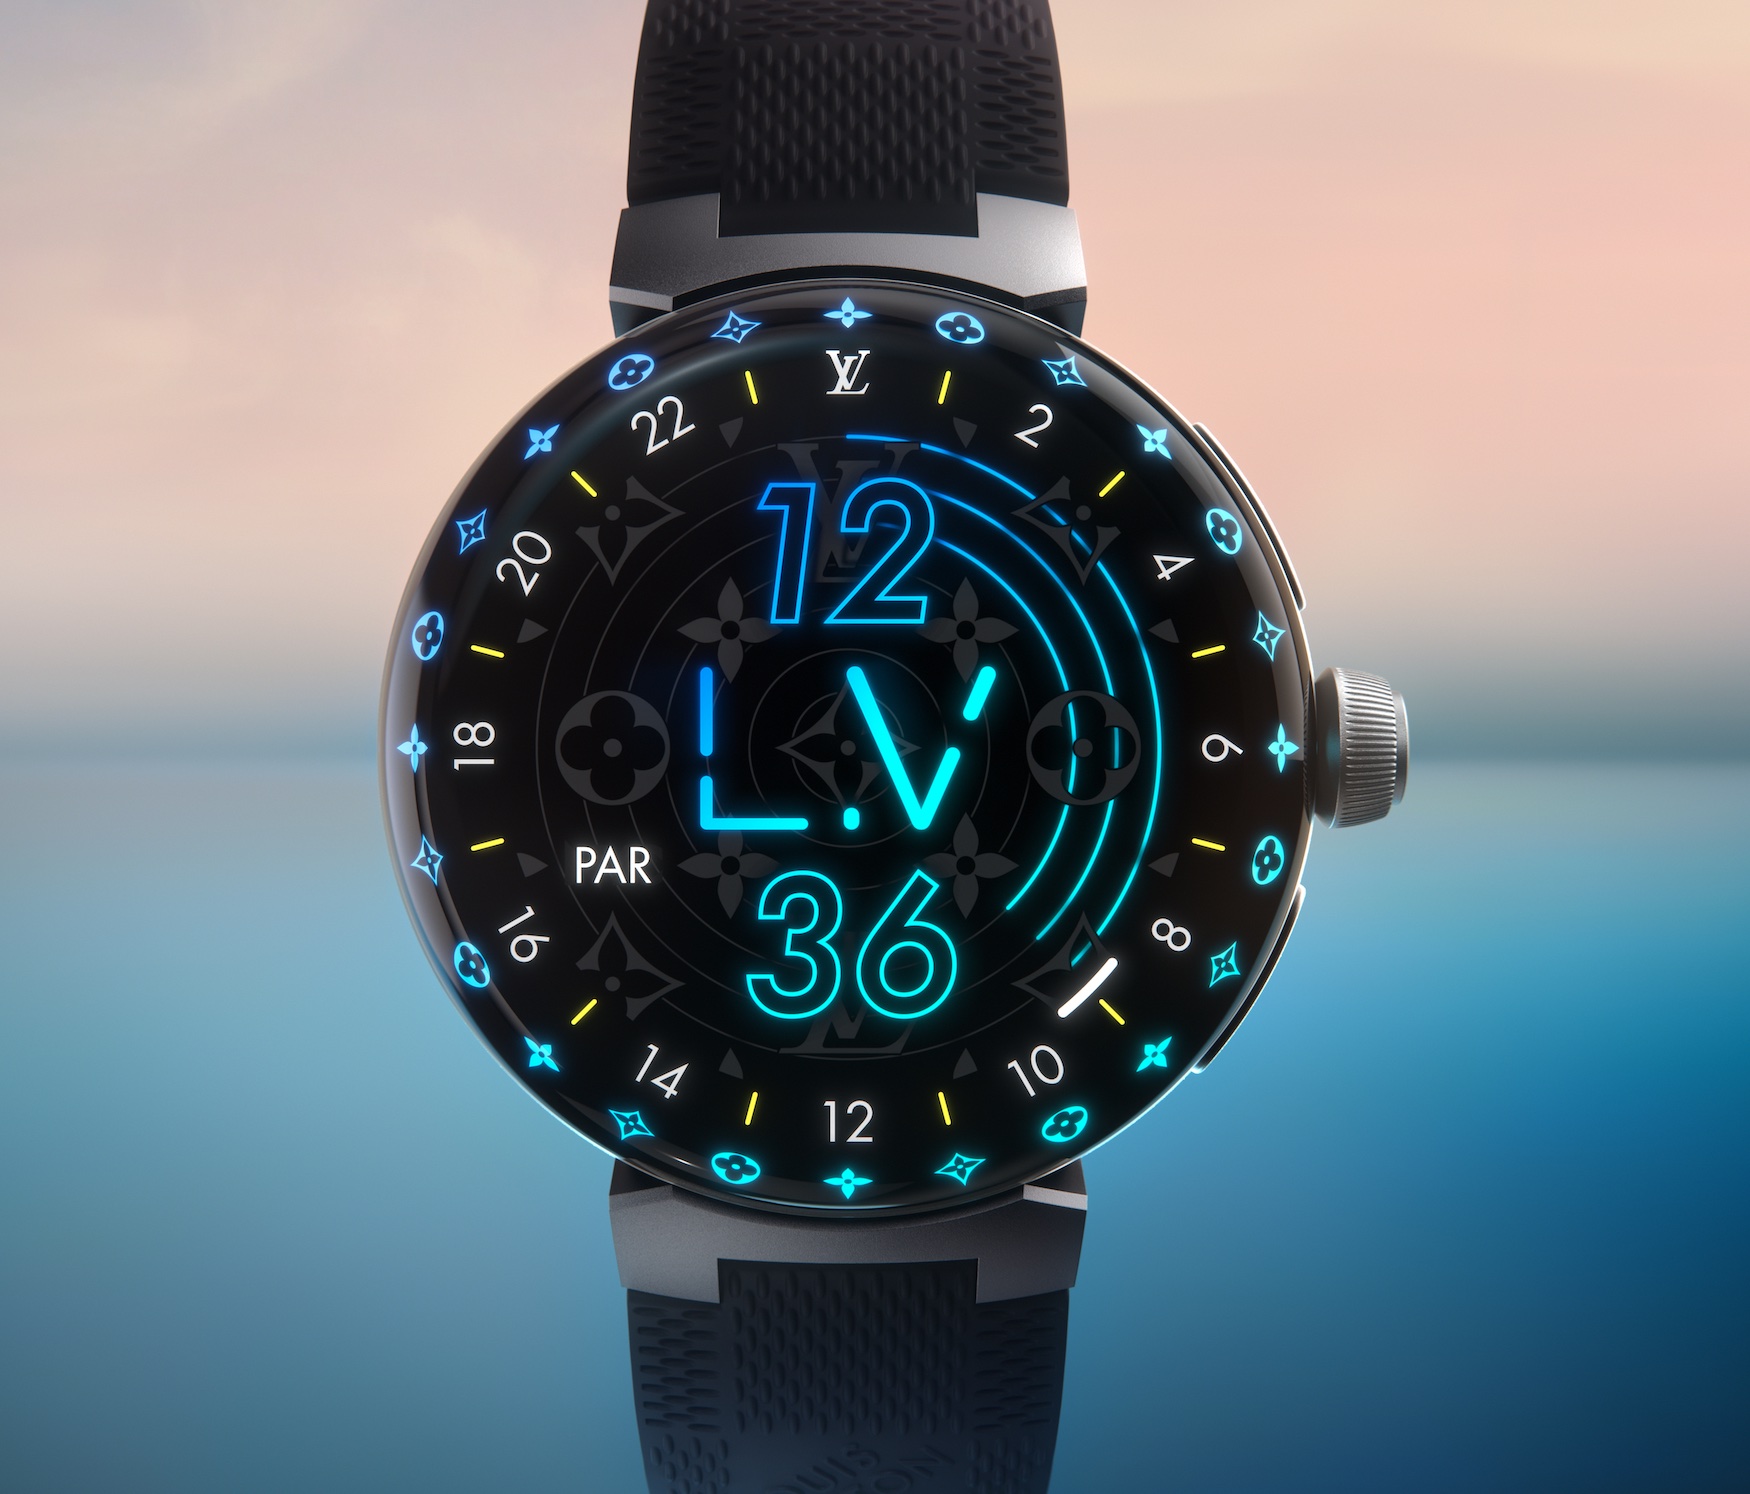 Louis Vuitton imagine la montre connectée qui pourrait remplacer